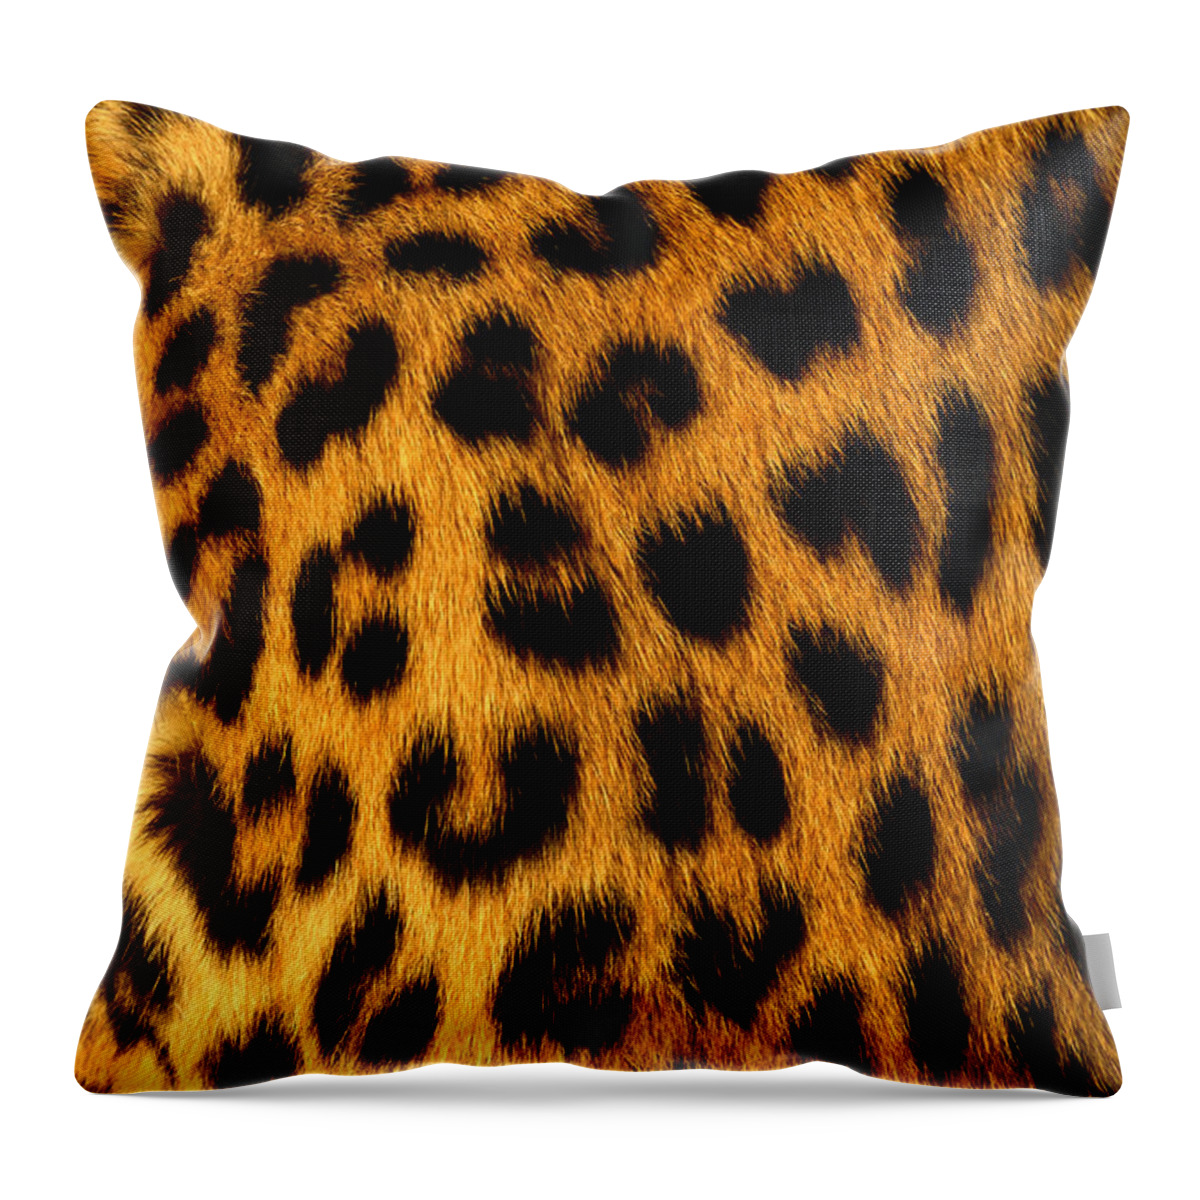 Black Color Throw Pillow featuring the photograph Jaguar Fur by Siede Preis